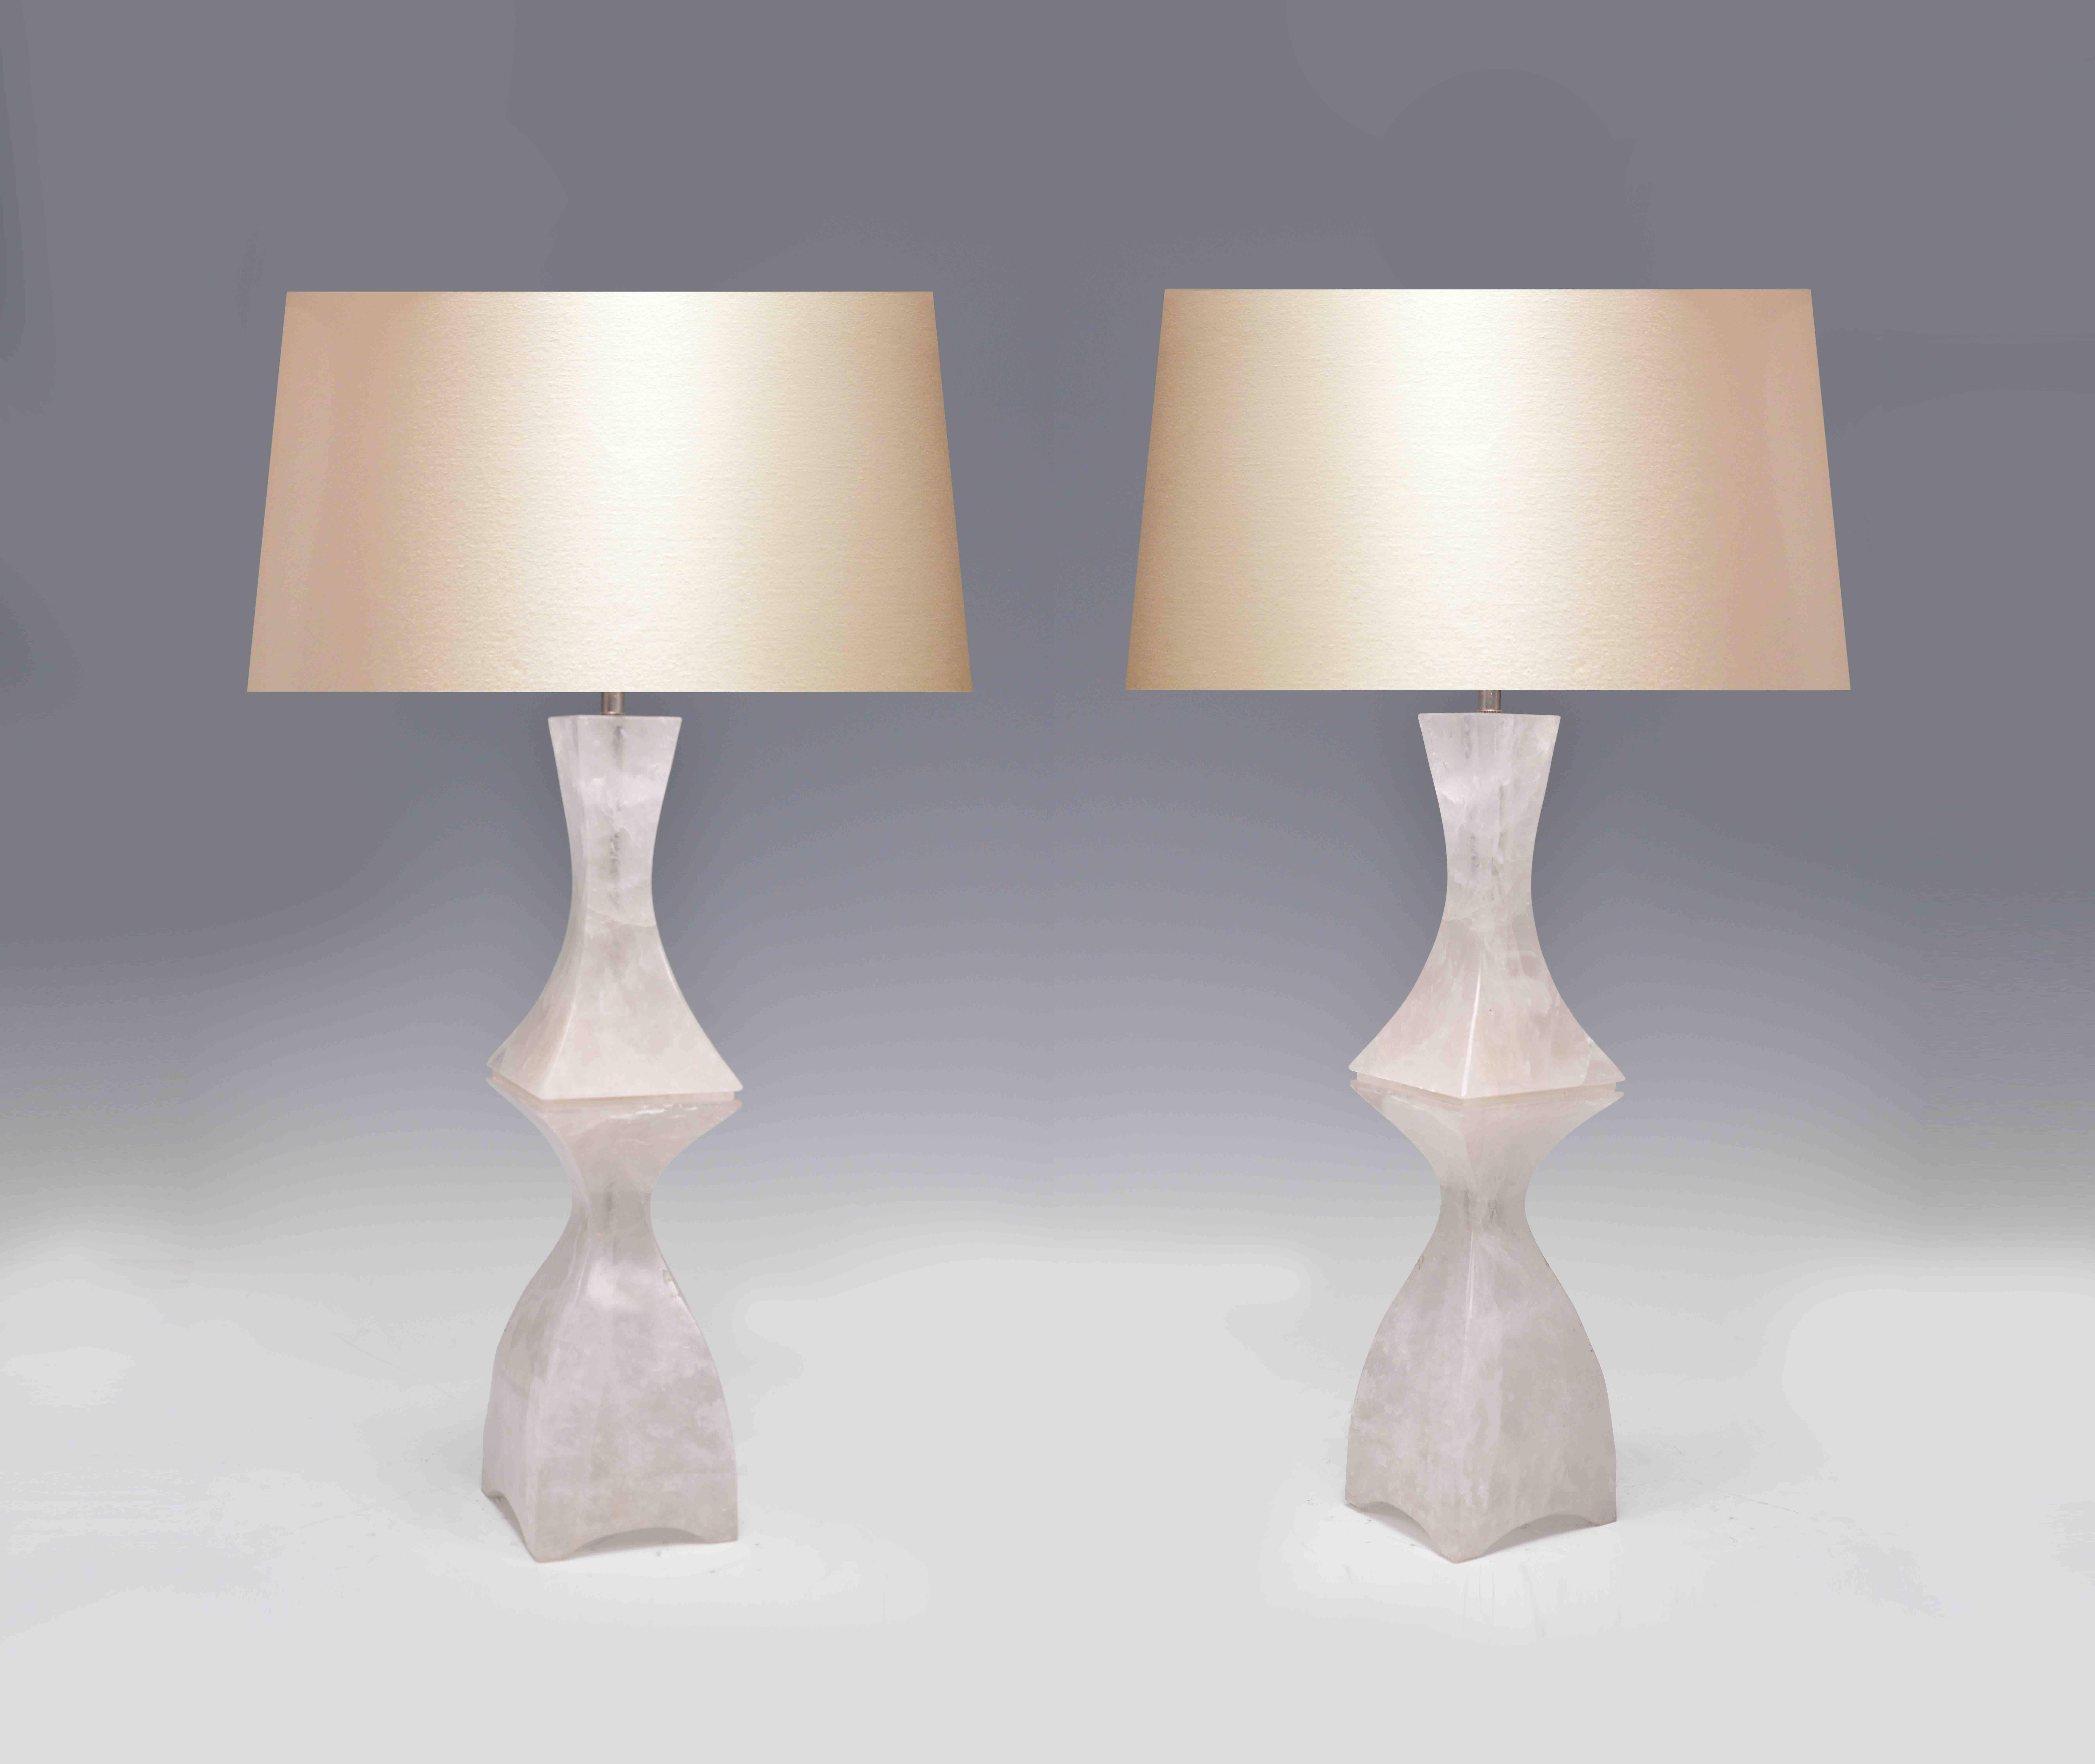 Ein Paar fein geschnitzte Lampen in eleganter Form aus modernem Bergkristall, geschaffen von Phoenix Gallery, NYC.
Um die Spitze des Bergkristalls ist 20 in H, die Abmessungen der Basis sind: 5,5 in W x 5,5 in D.
(Lampenschirm nicht enthalten)
